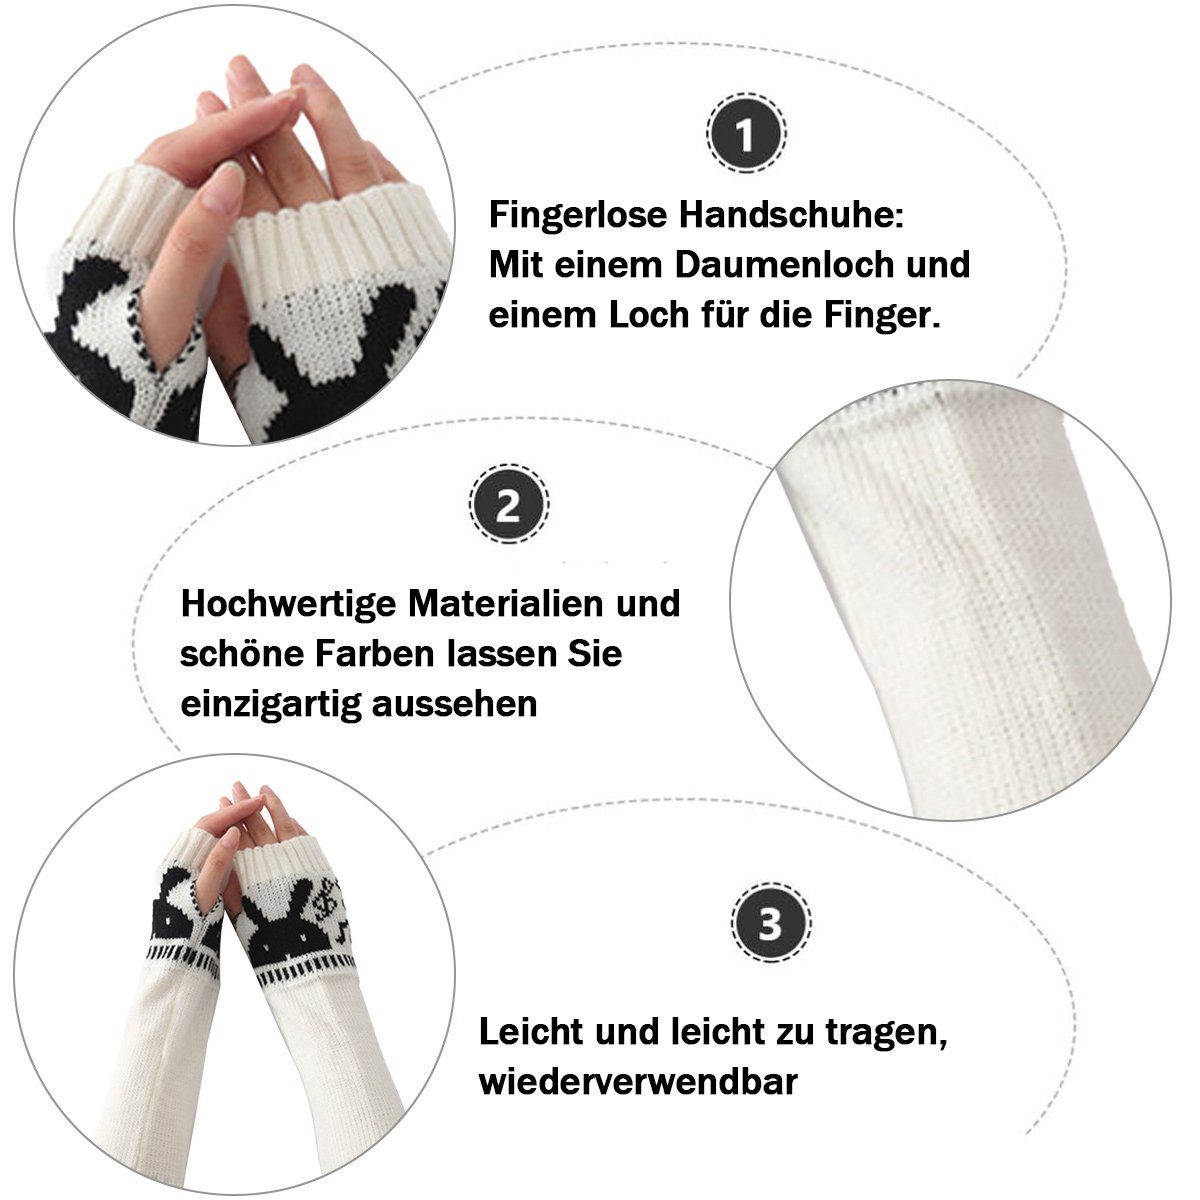 und Damen Lange Armstulpen Weiß Strickhandschuhe Herren Gestrickte Handschuhe für Jormftte Winter